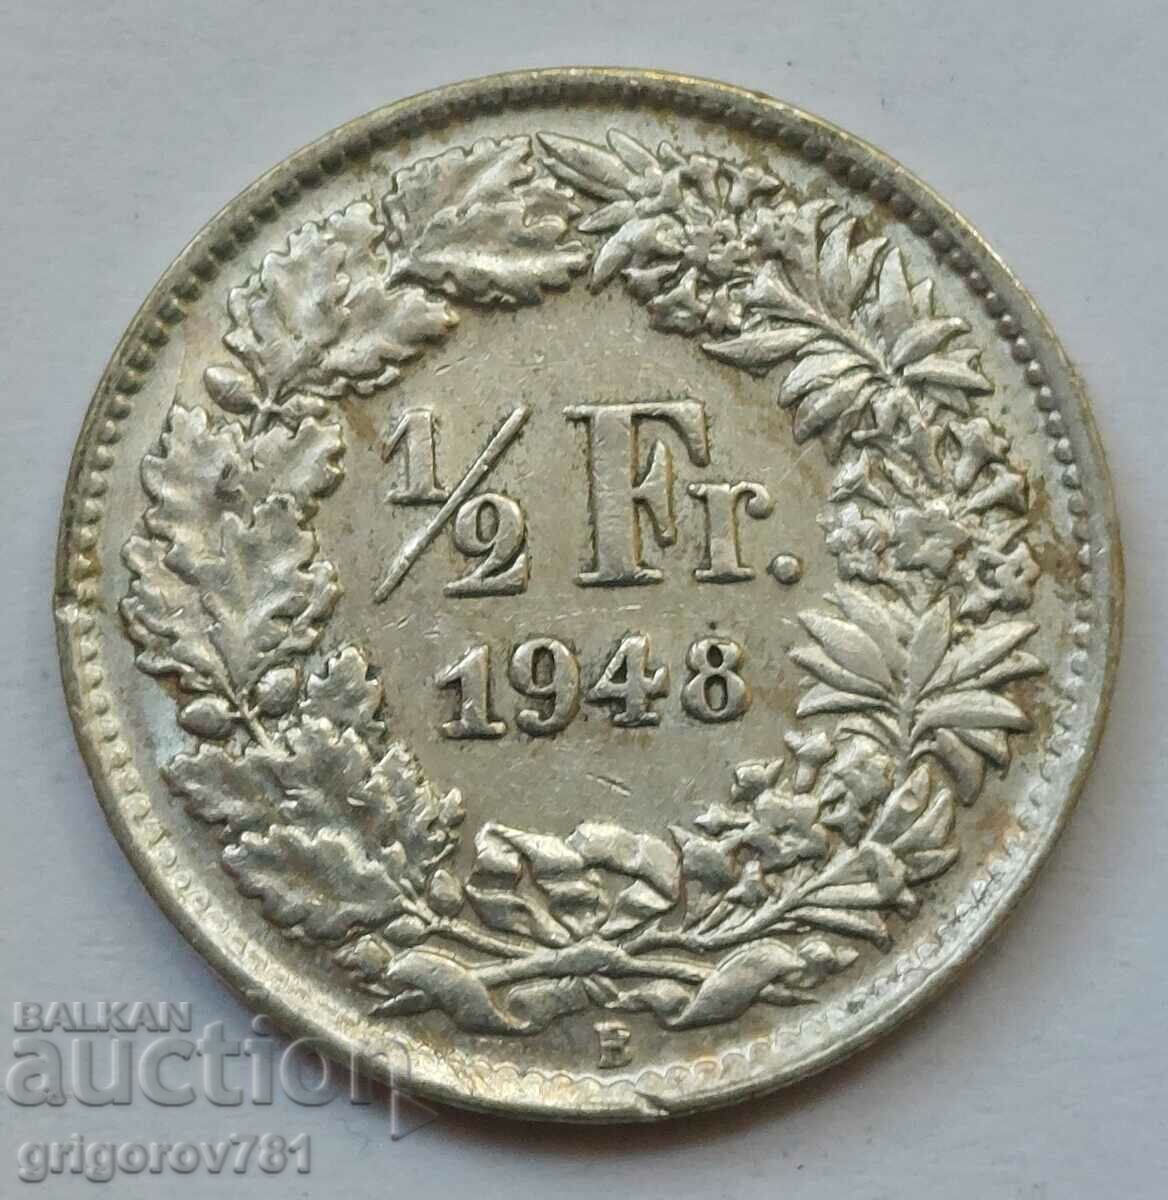 Ασημένιο φράγκο 1/2 Ελβετία 1948 Β - Ασημένιο νόμισμα #190